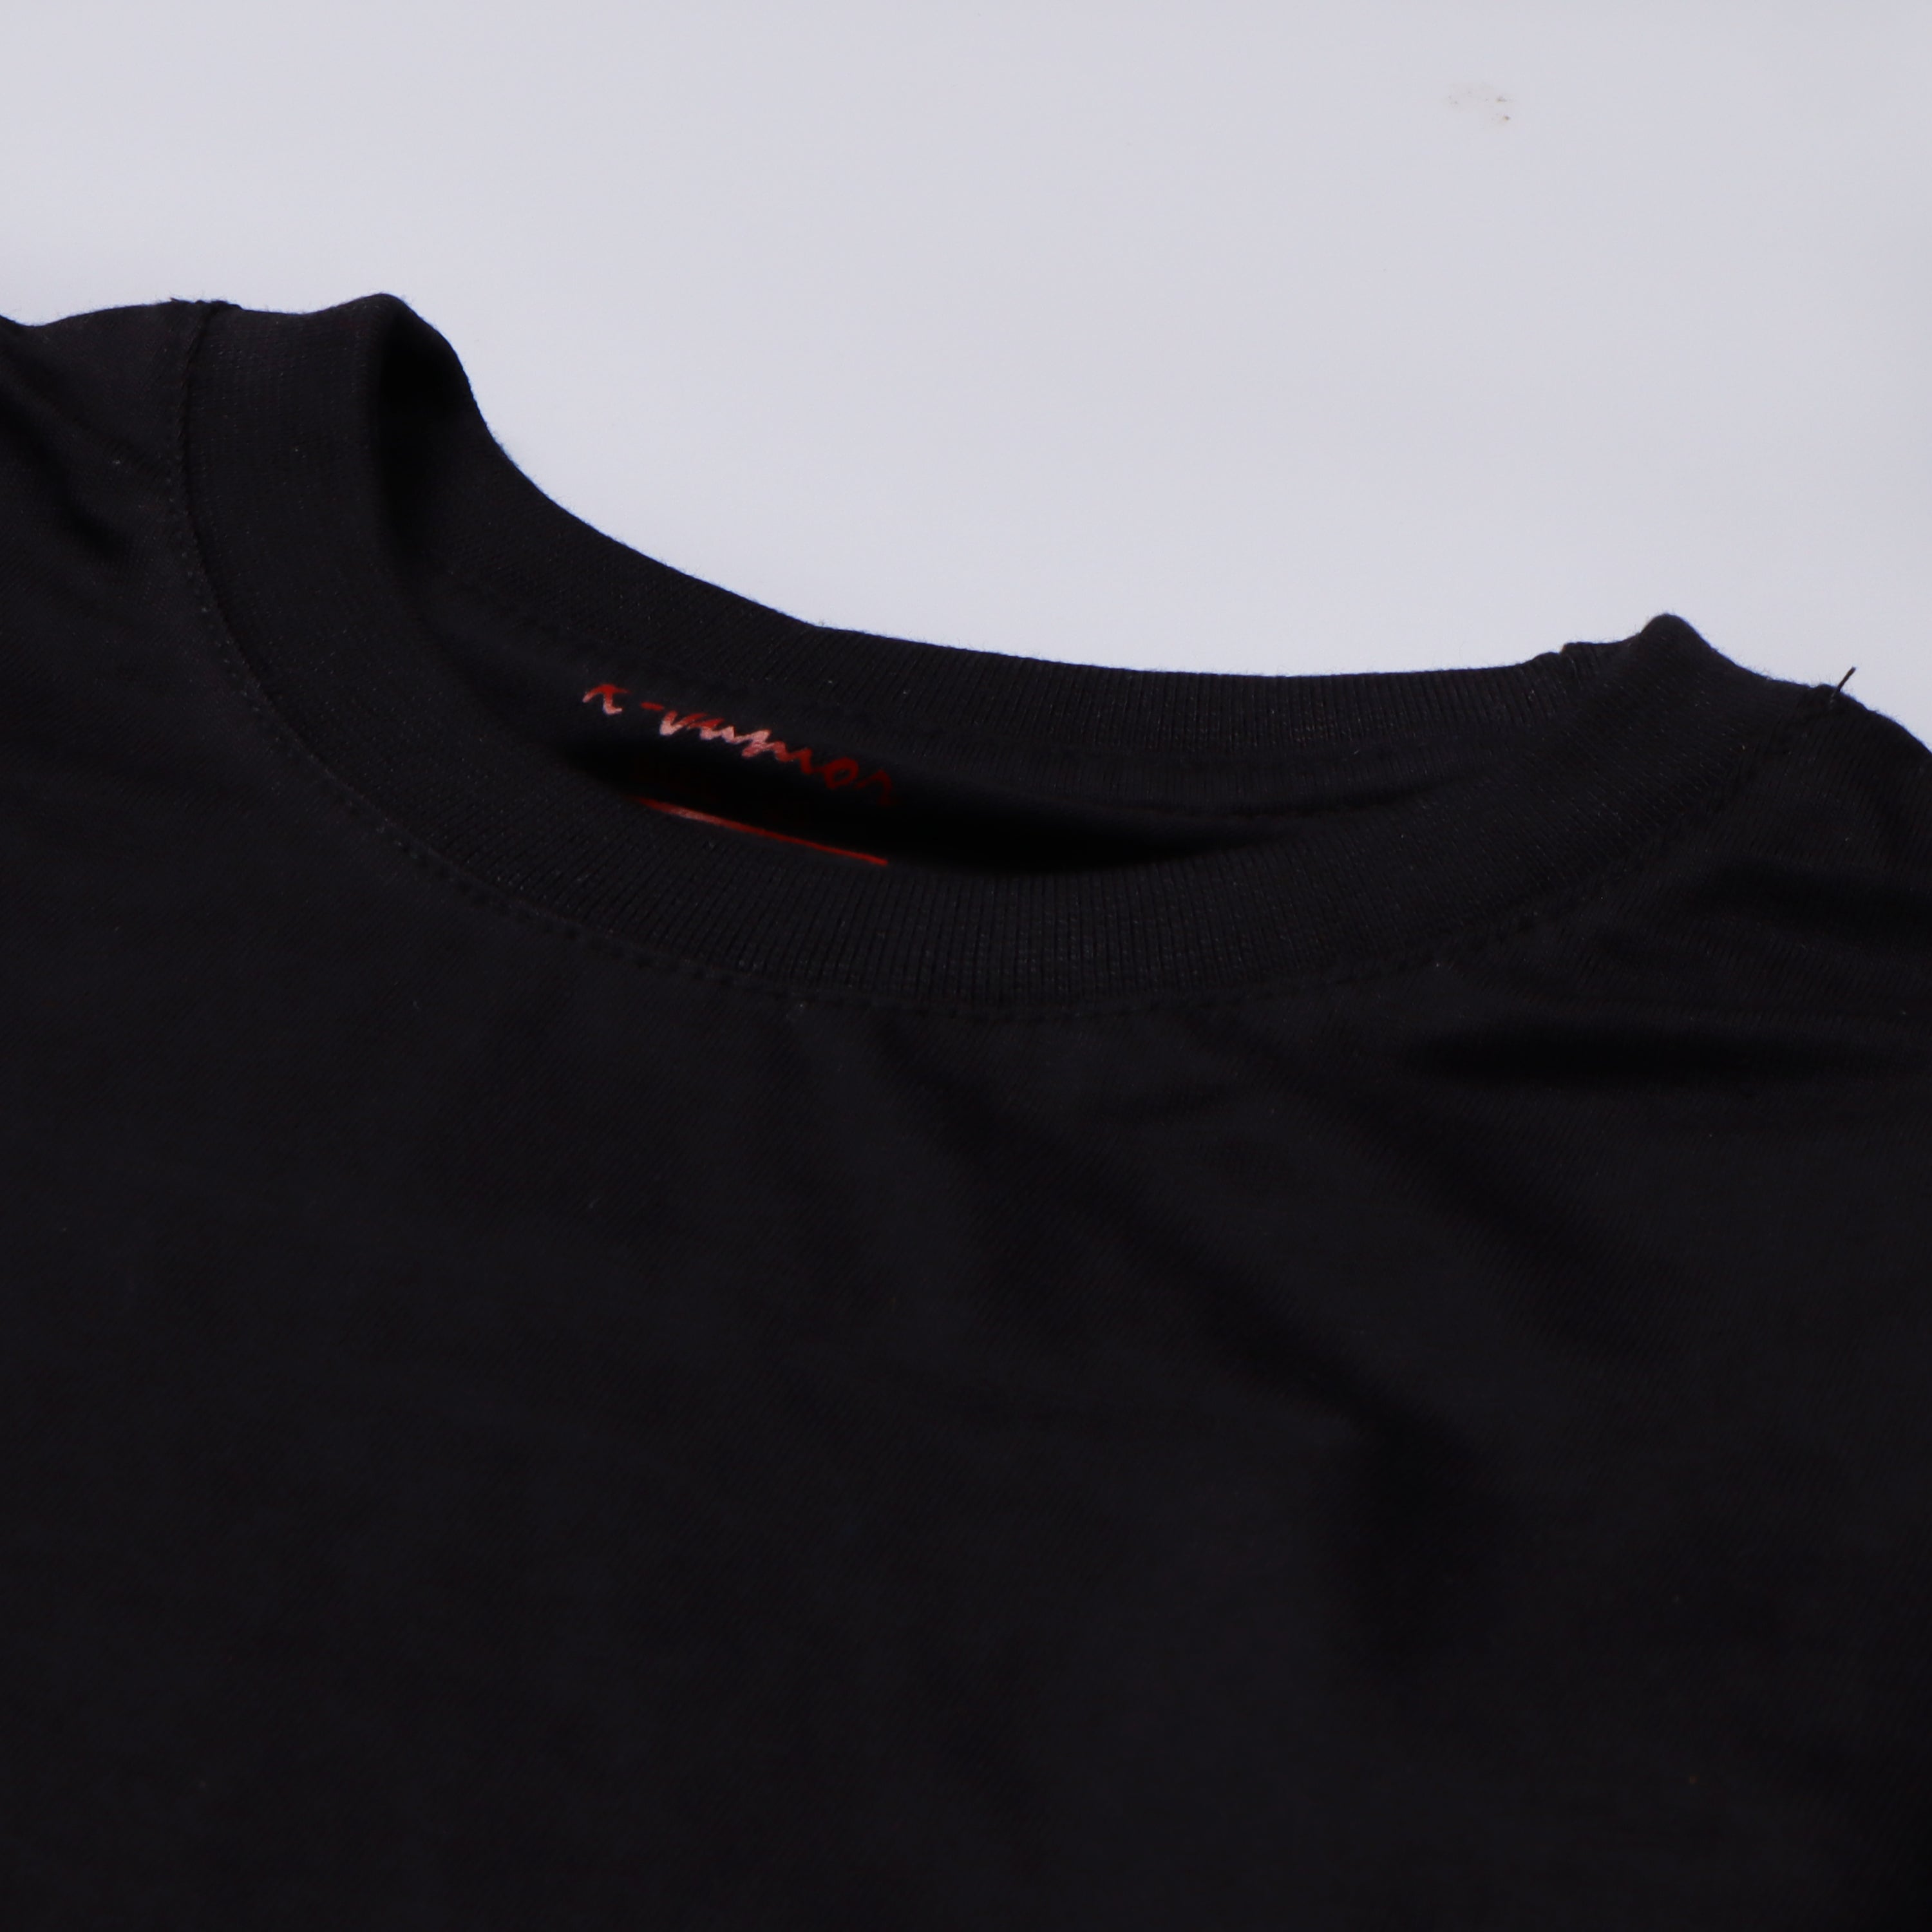 Boys Half Sleeves-Printed T-Shirt (W)